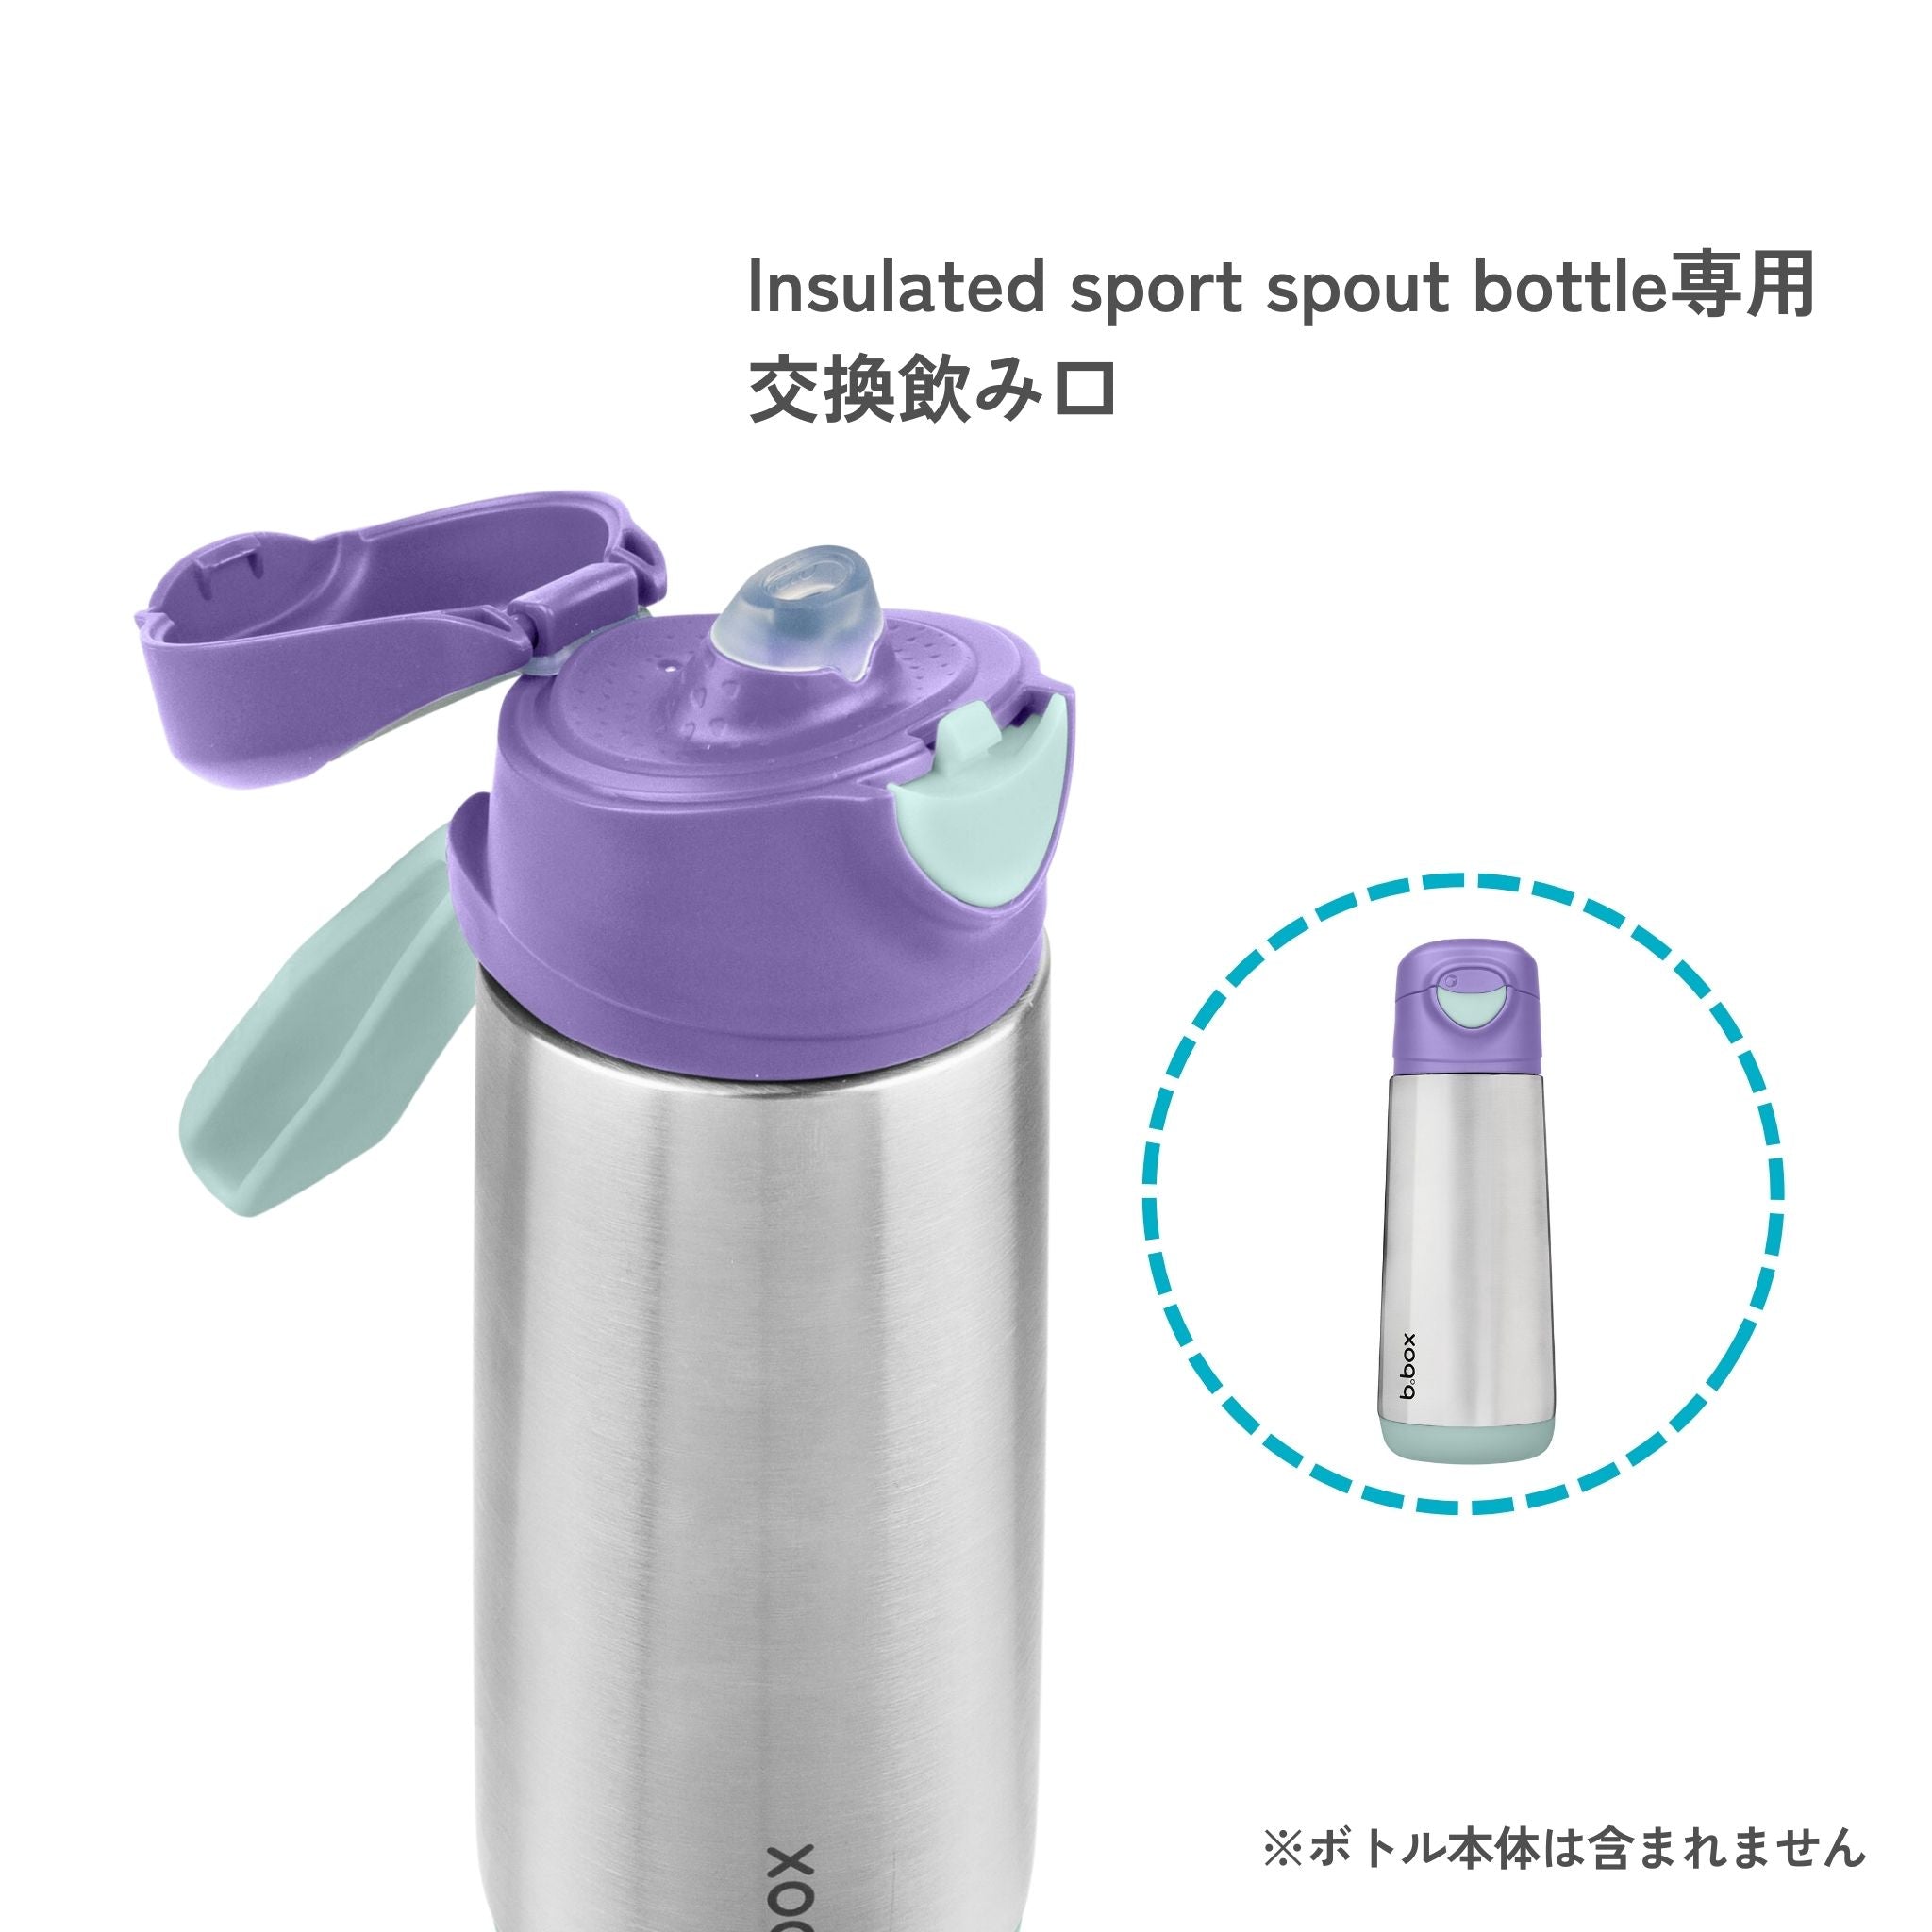 ステンレススポーツスパウトボトル専用交換用スパウト2個セット/Insulated sport spout bottle 2pk replacement part